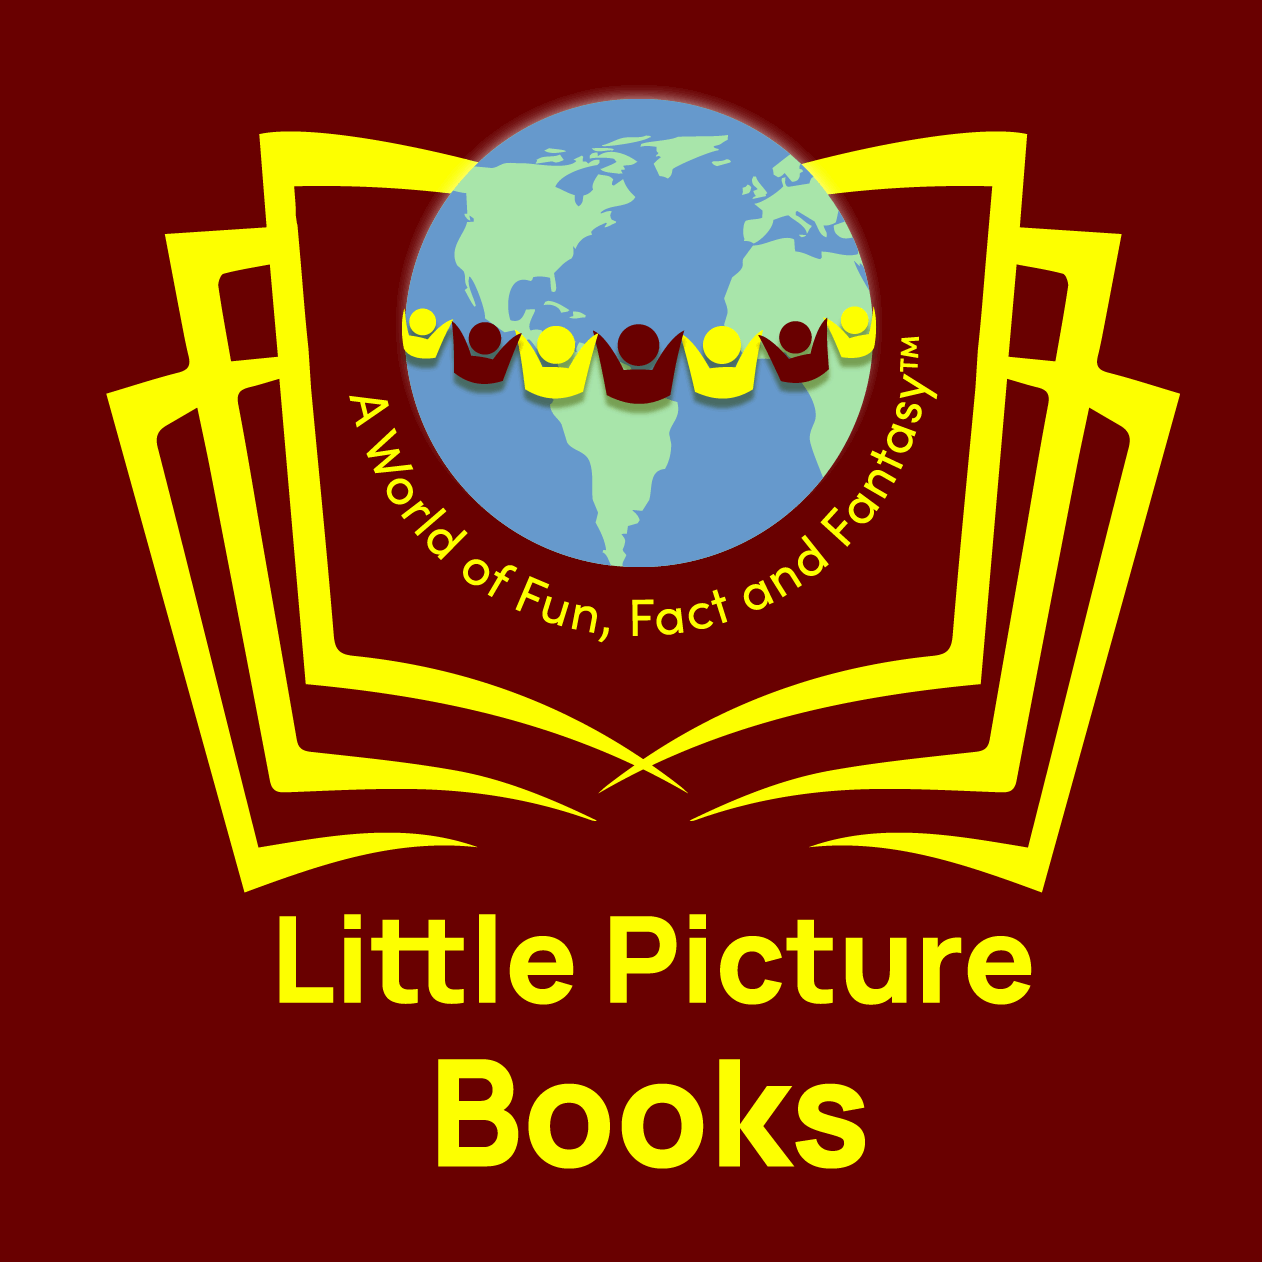 Little Picture Books Entertainment Corporation